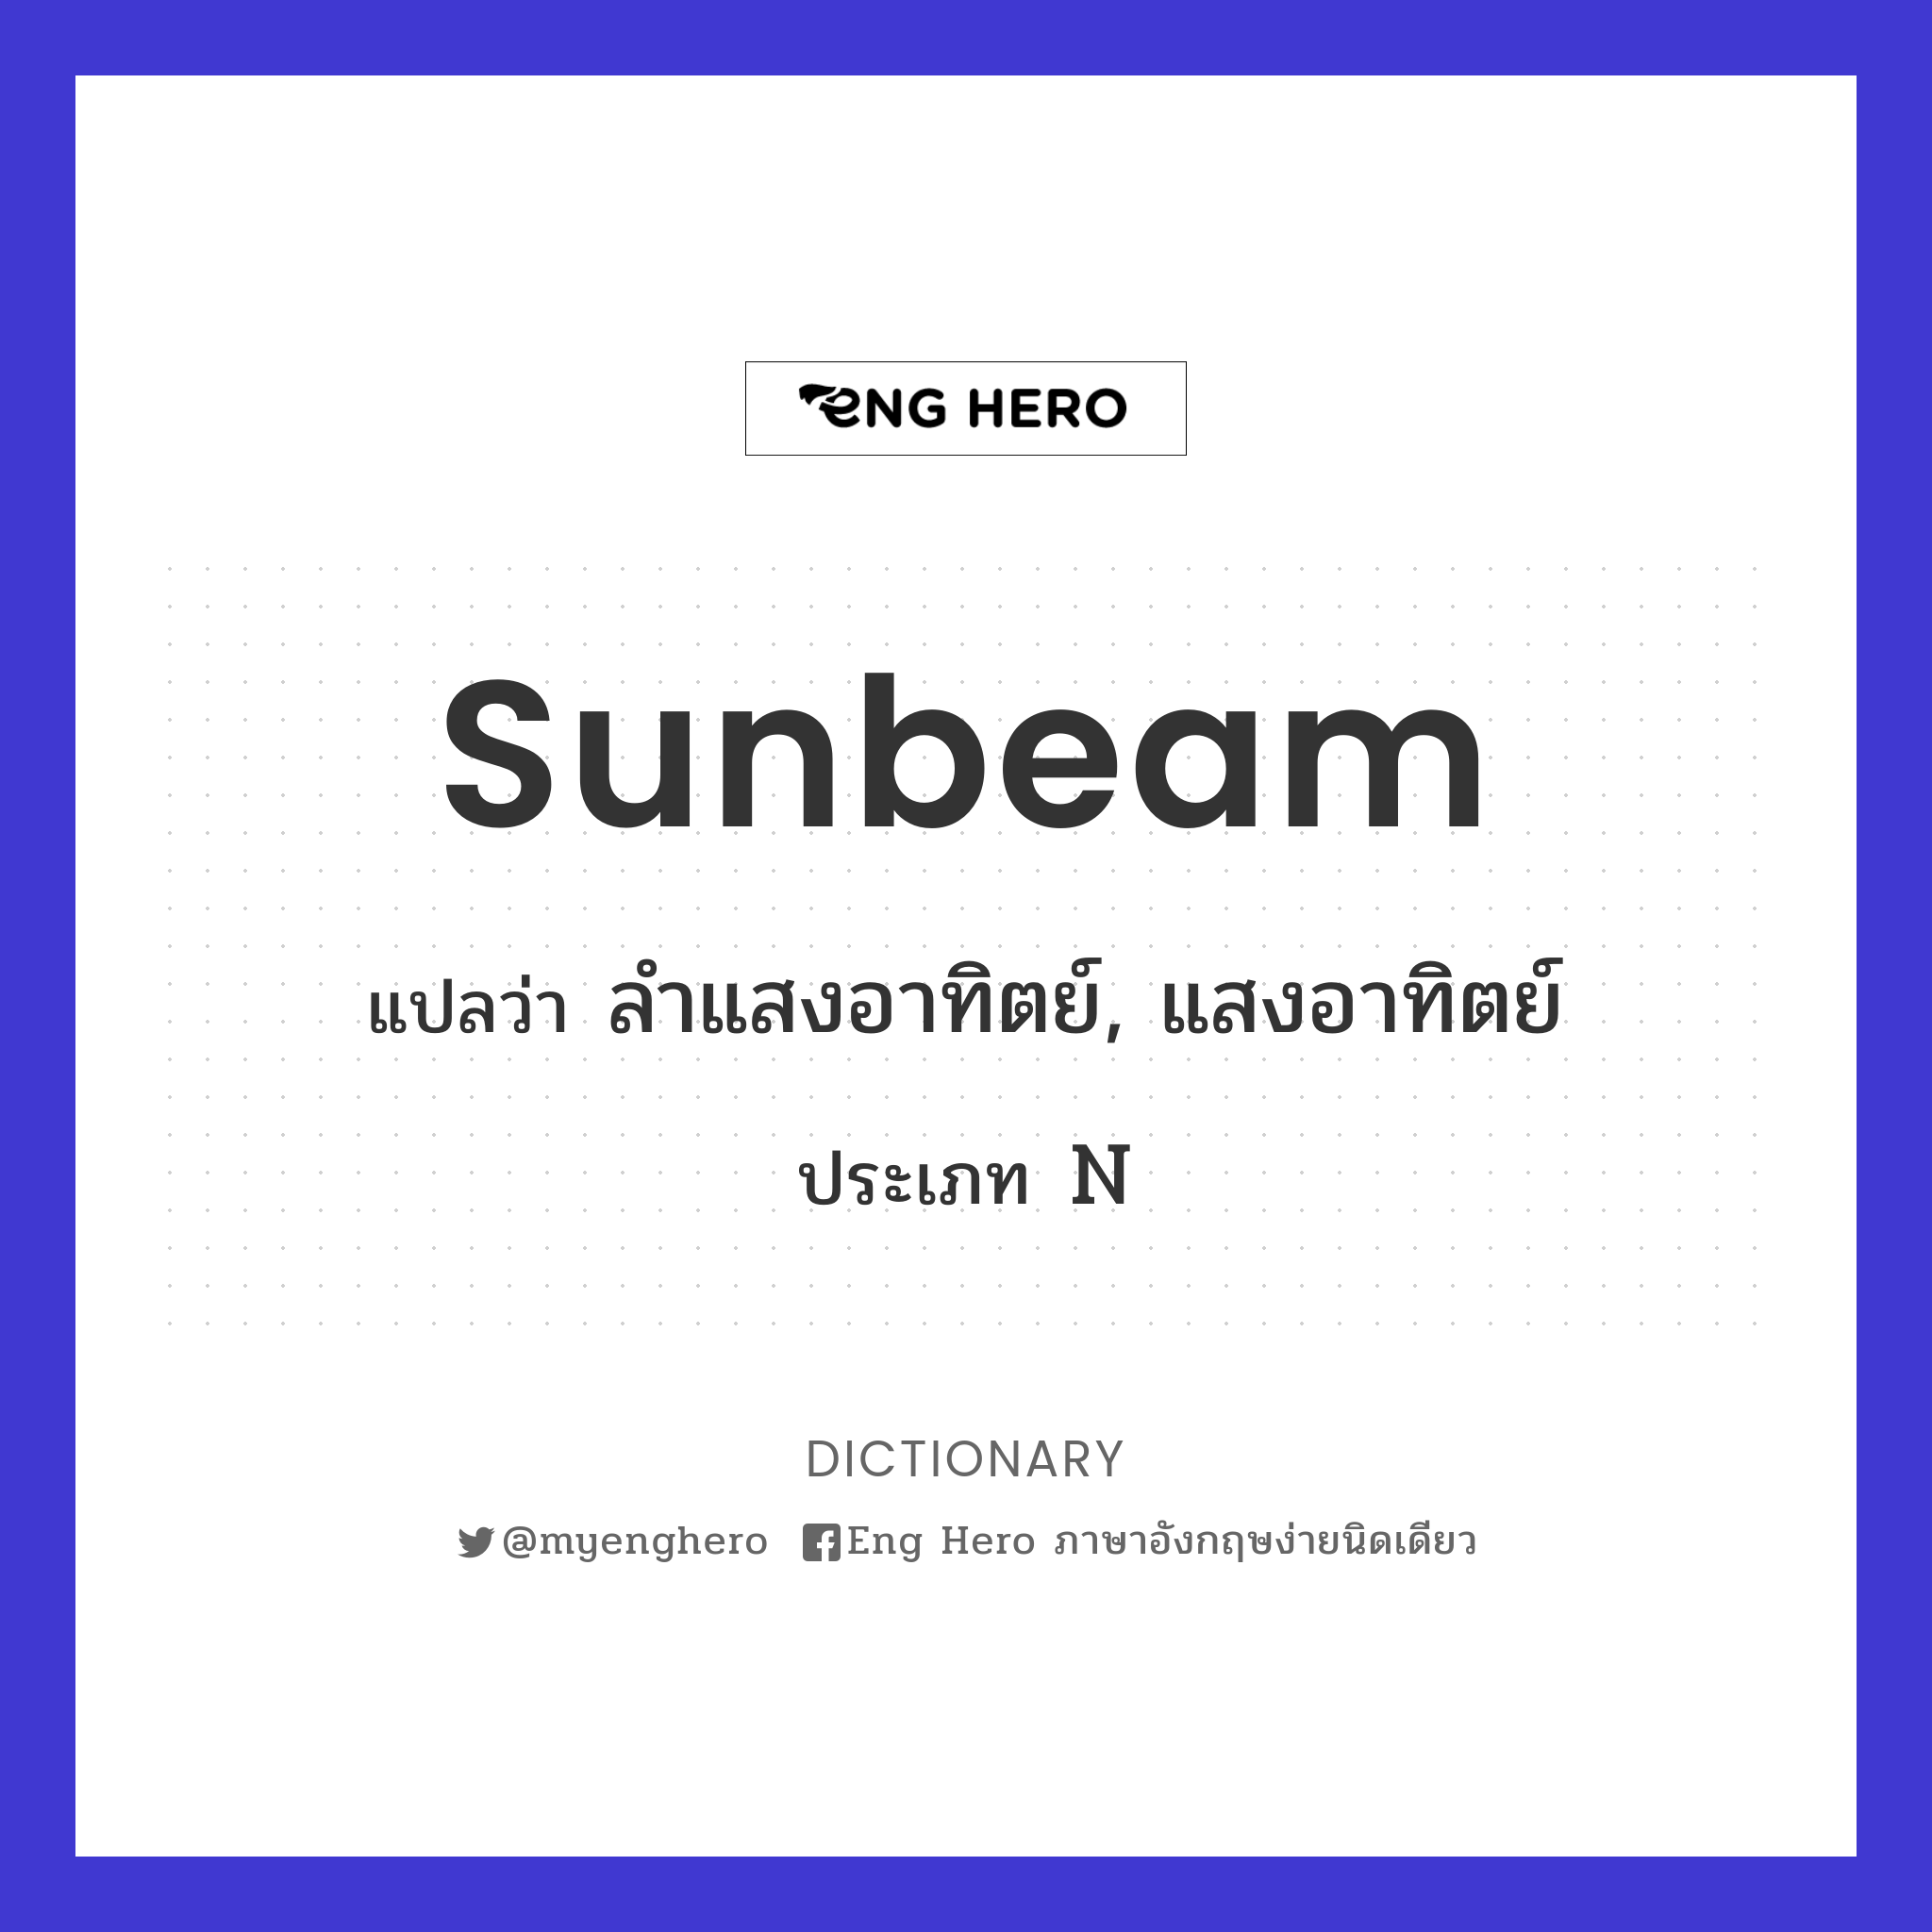 sunbeam